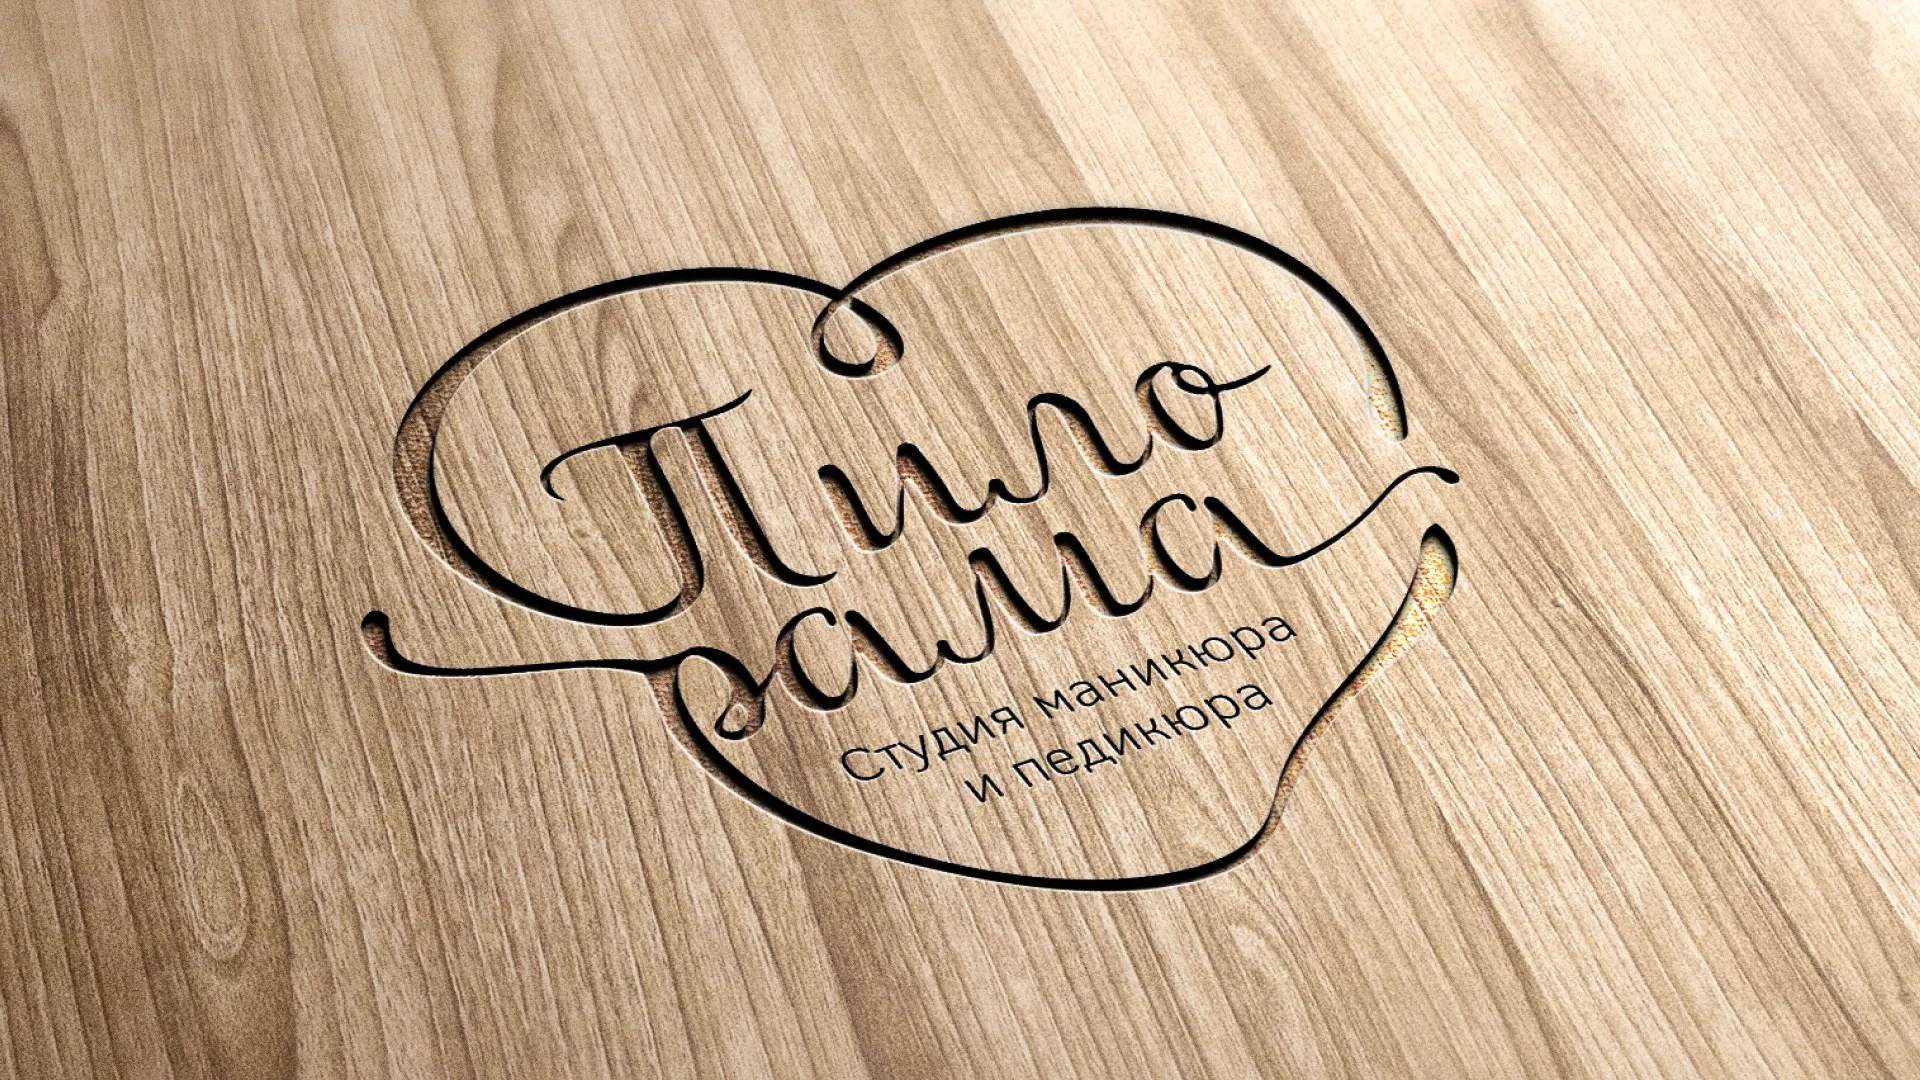 Разработка логотипа студии маникюра и педикюра «Пилорама» в Ликино-Дулево